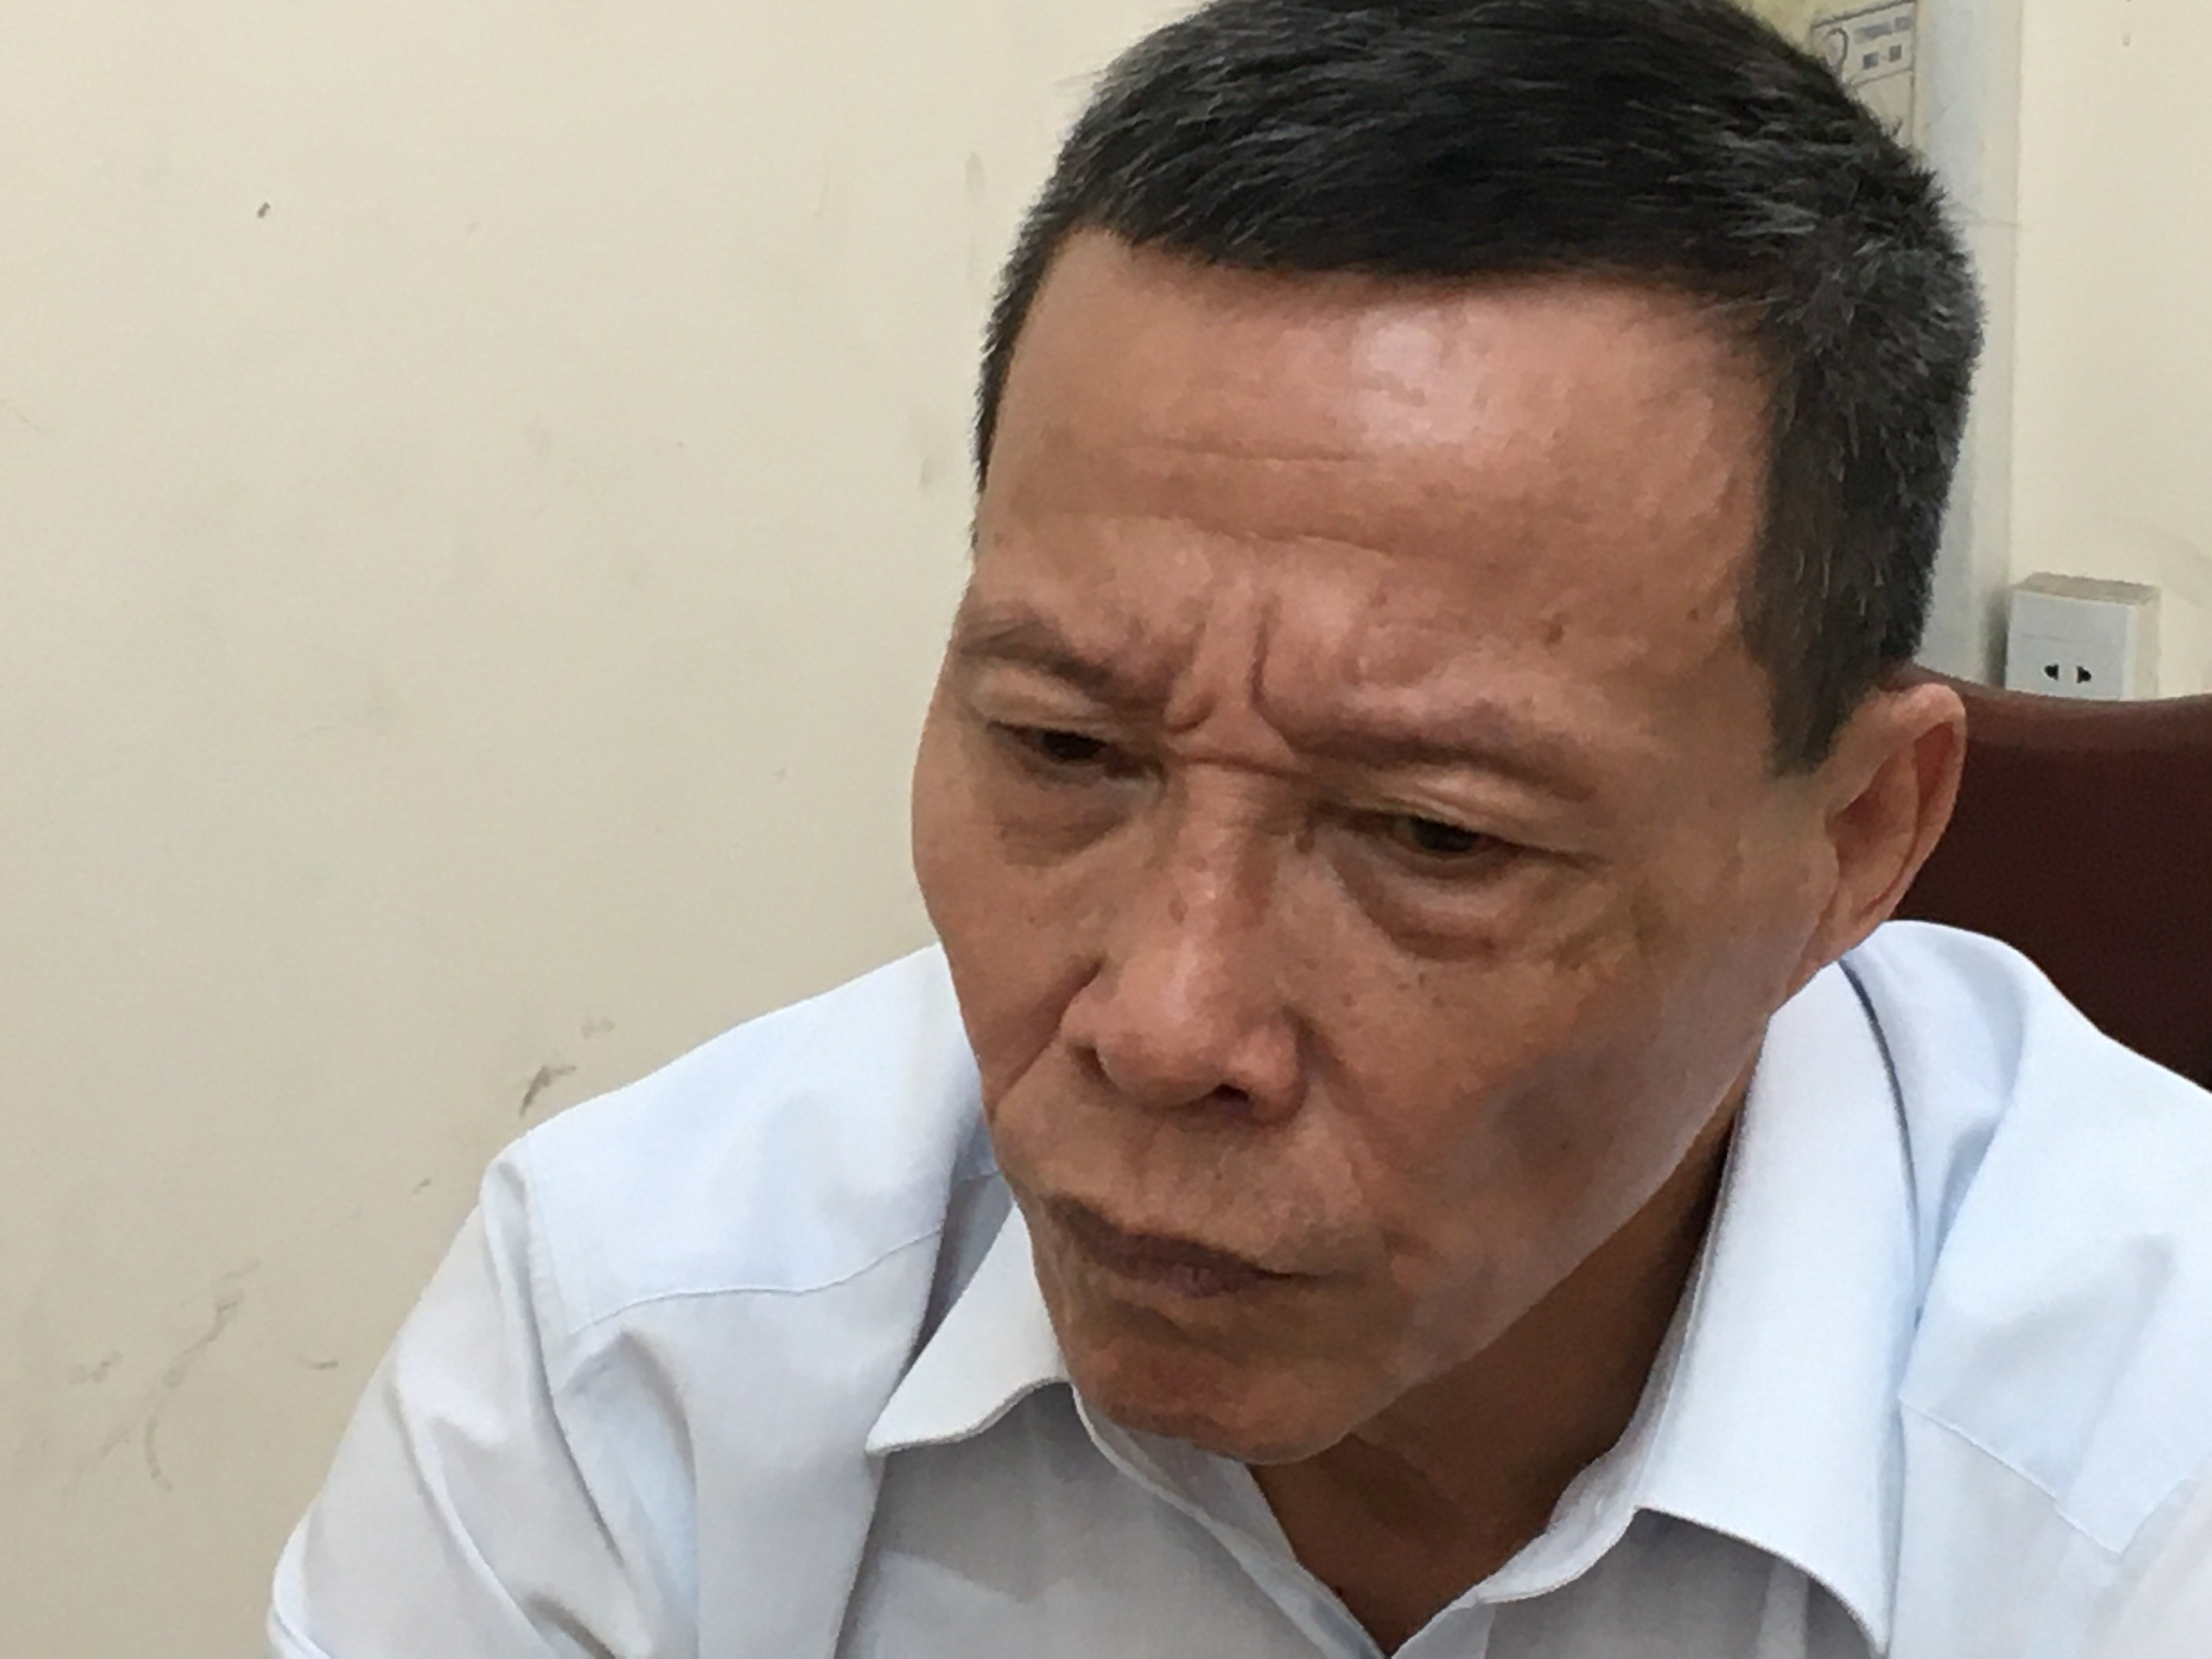 Hồ sơ điều tra - Giám đốc “rởm” bị bắt sau 33 năm trốn lệnh truy nã